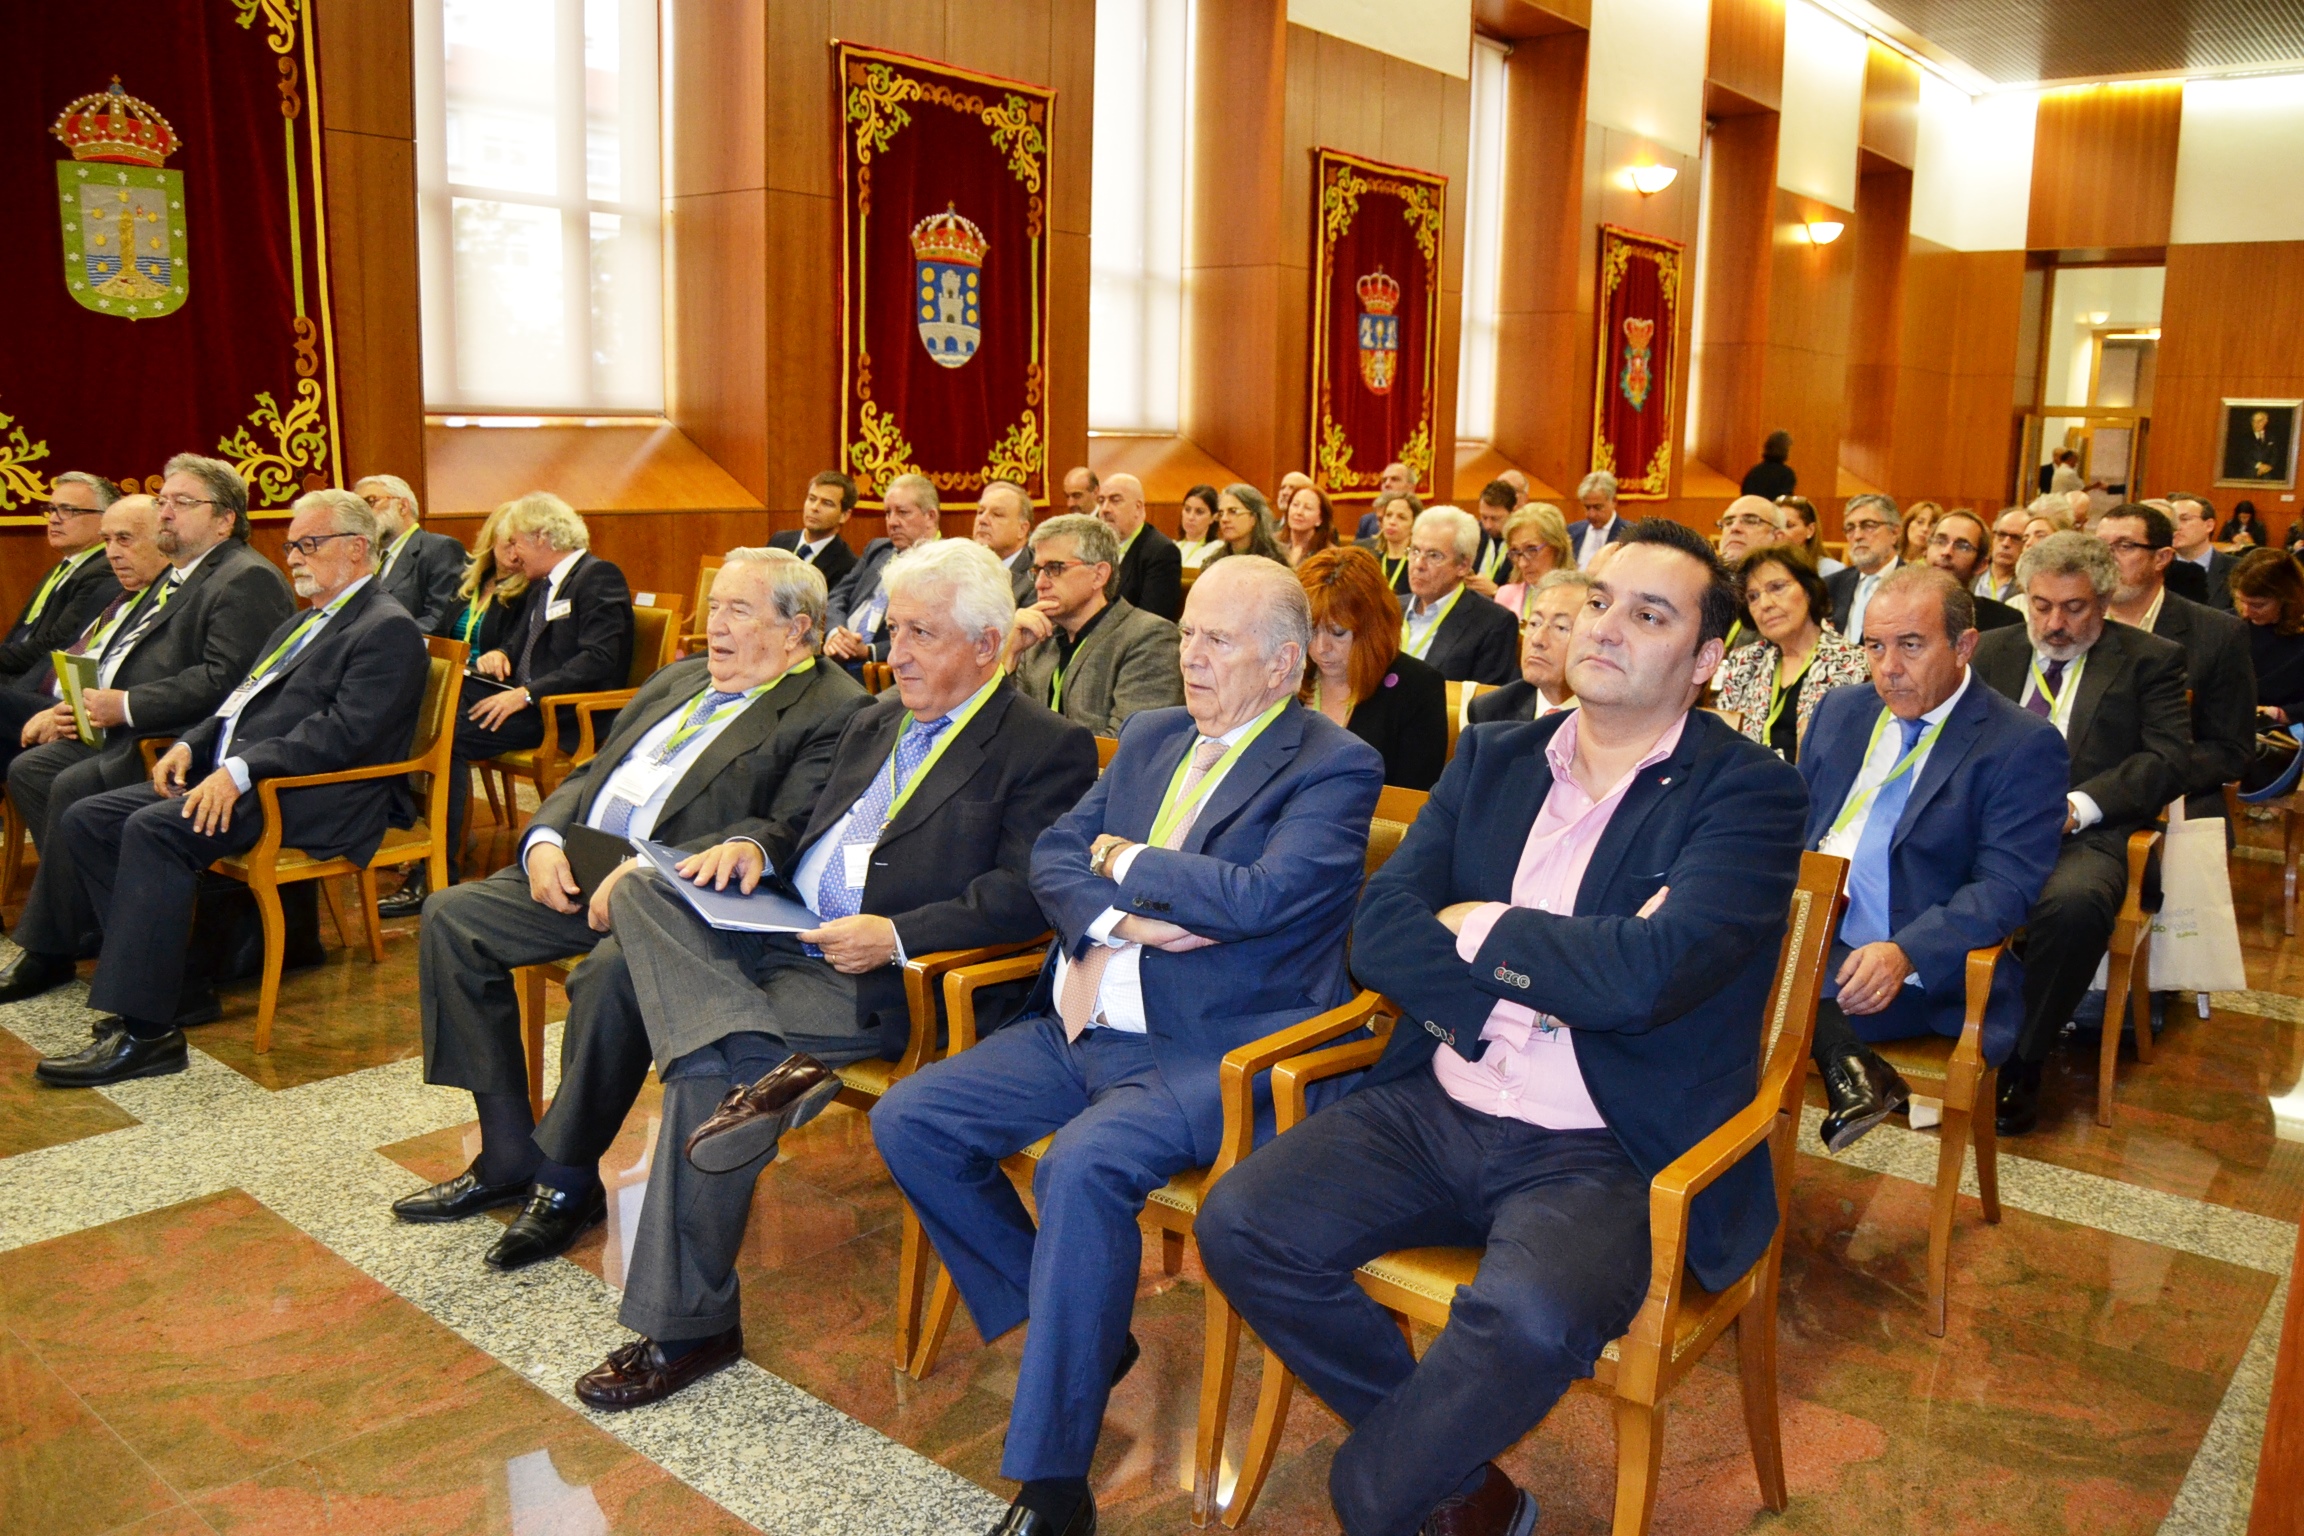 O Parlamento de Galicia acolleu as XXXII  Xornadas de coordinación de defensores do pobo